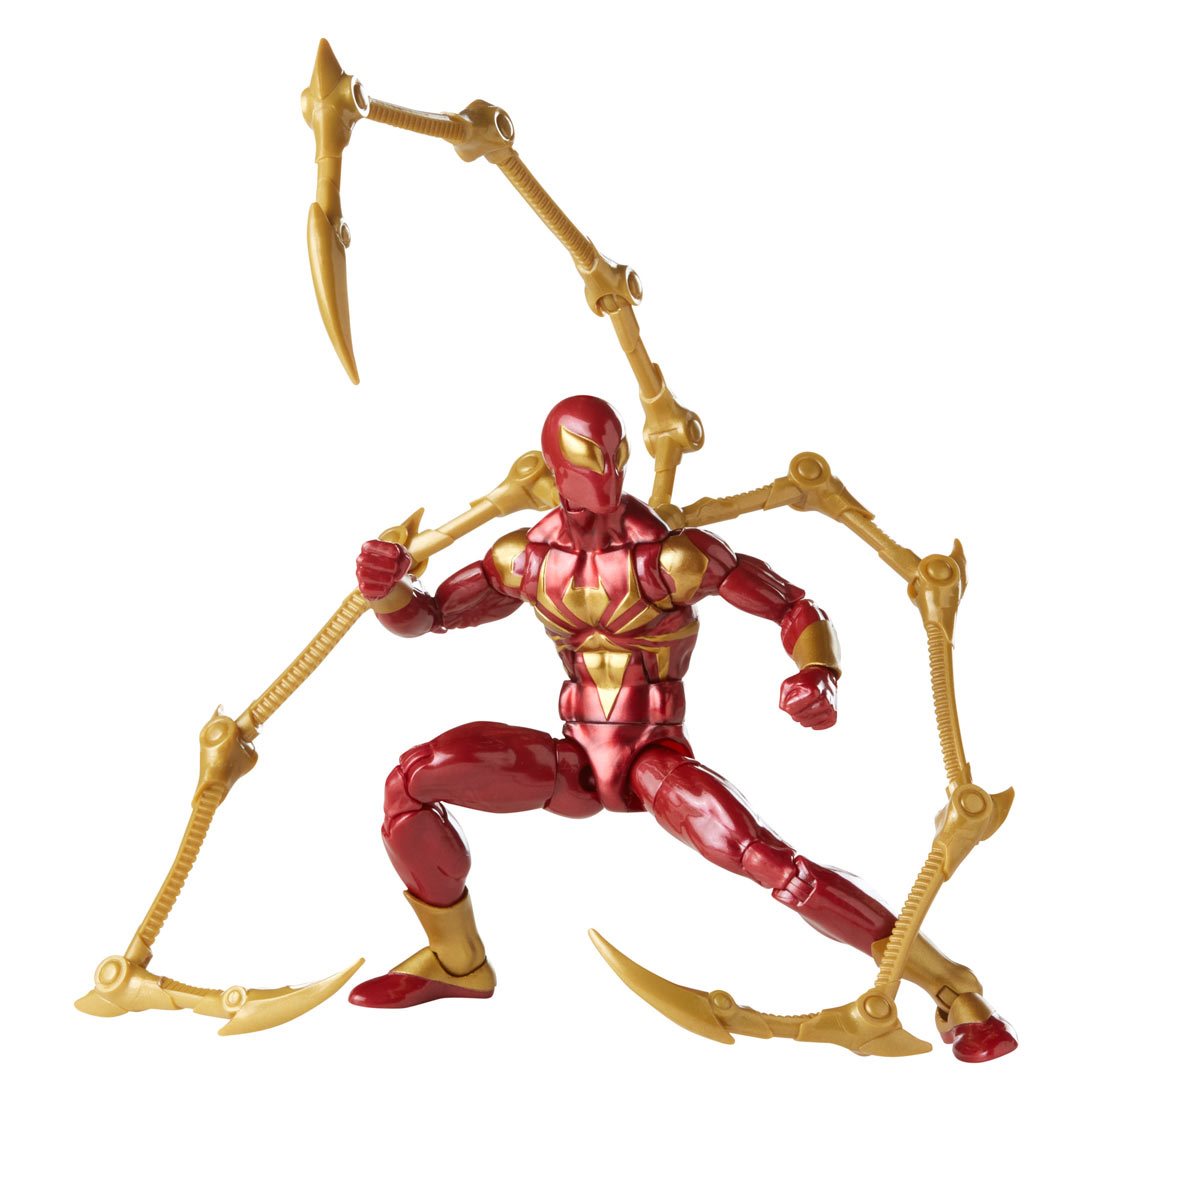 Marvel Legends Spider-Man Iron Spider